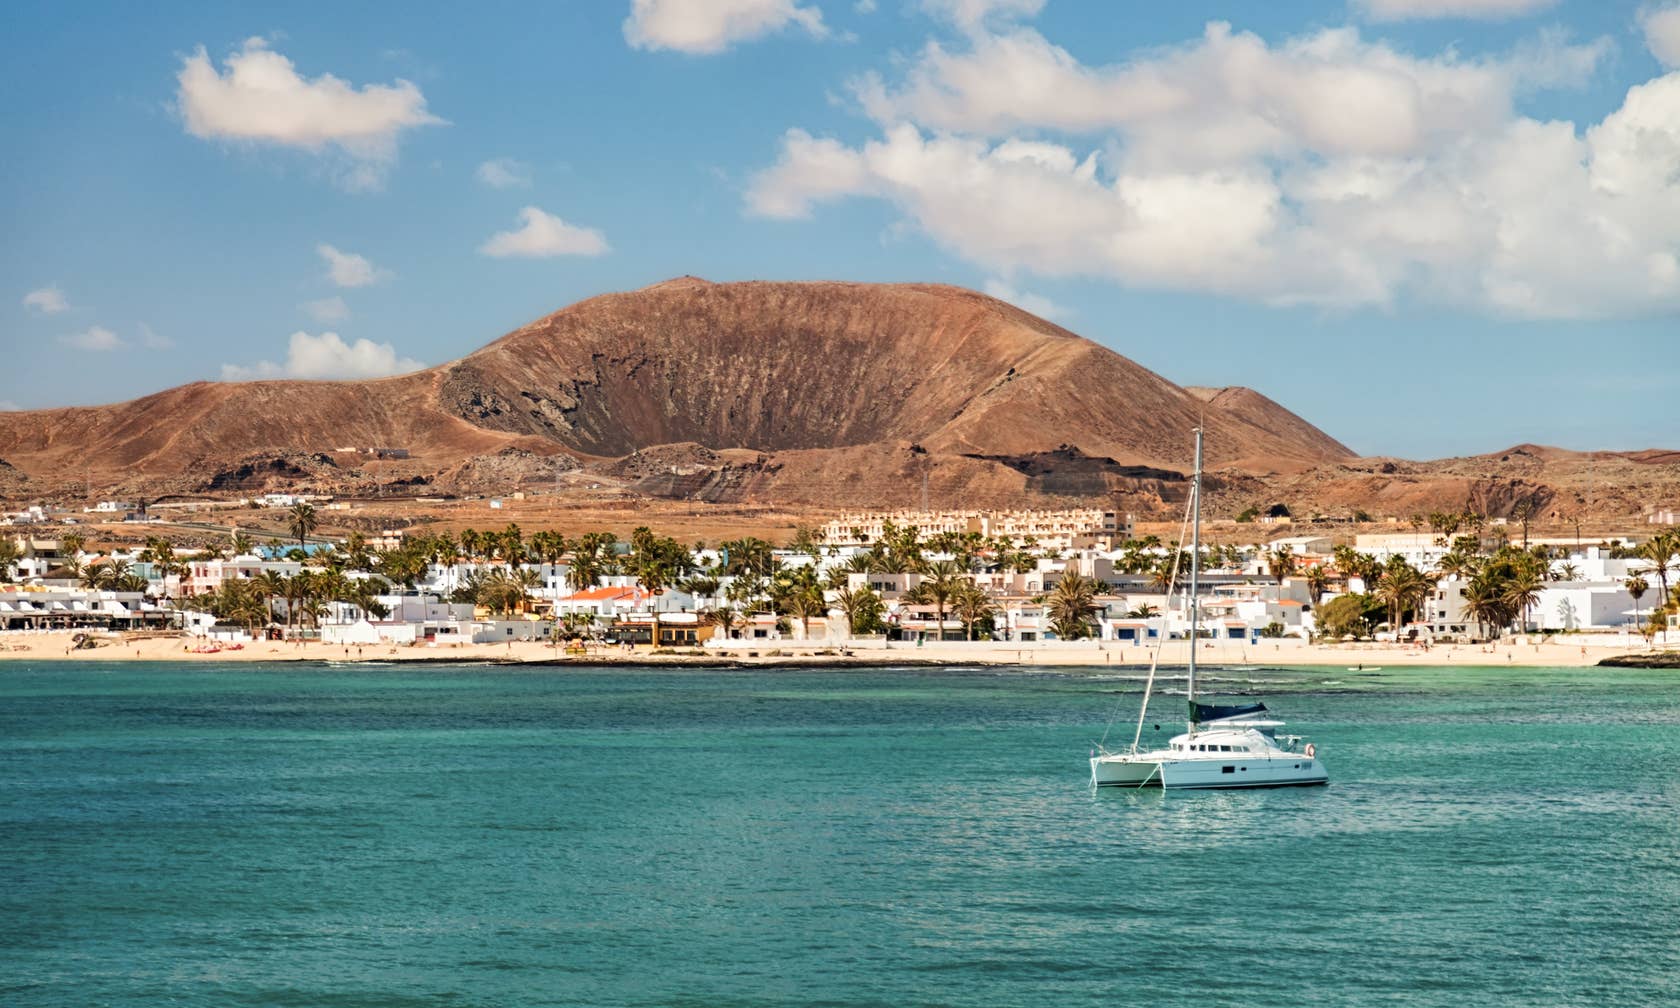 Bérbeadó nyaralók itt: Fuerteventura